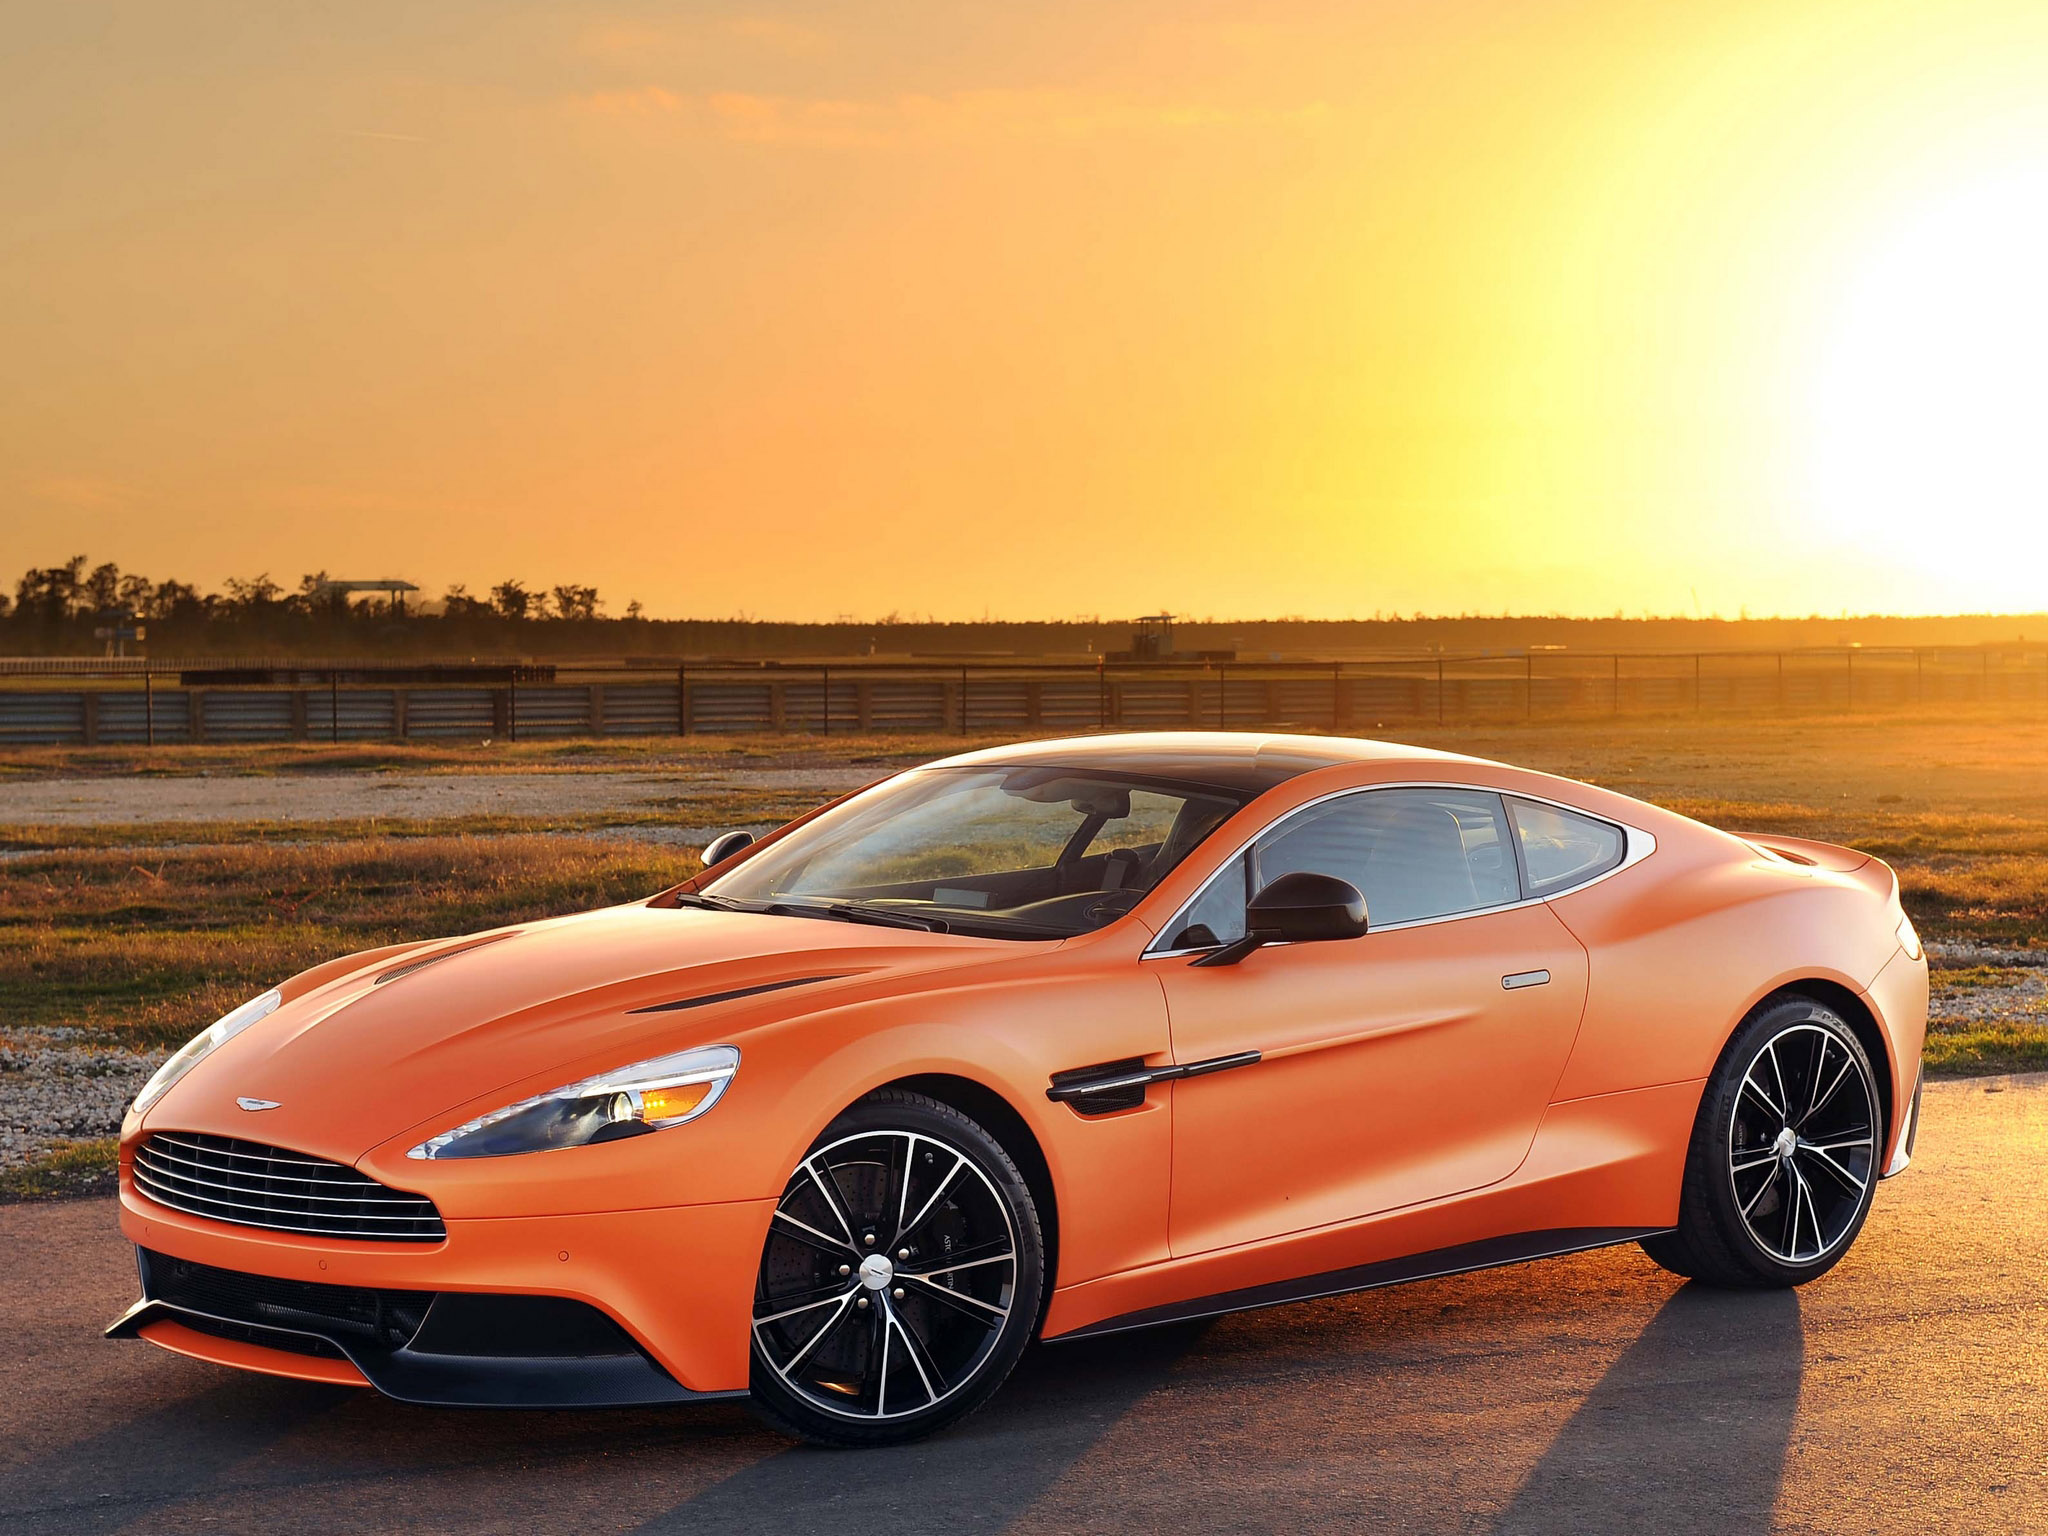 Free download wallpaper Sunset, Aston Martin, Car, Aston Martin Vanquish, Vehicles, Orange Car on your PC desktop